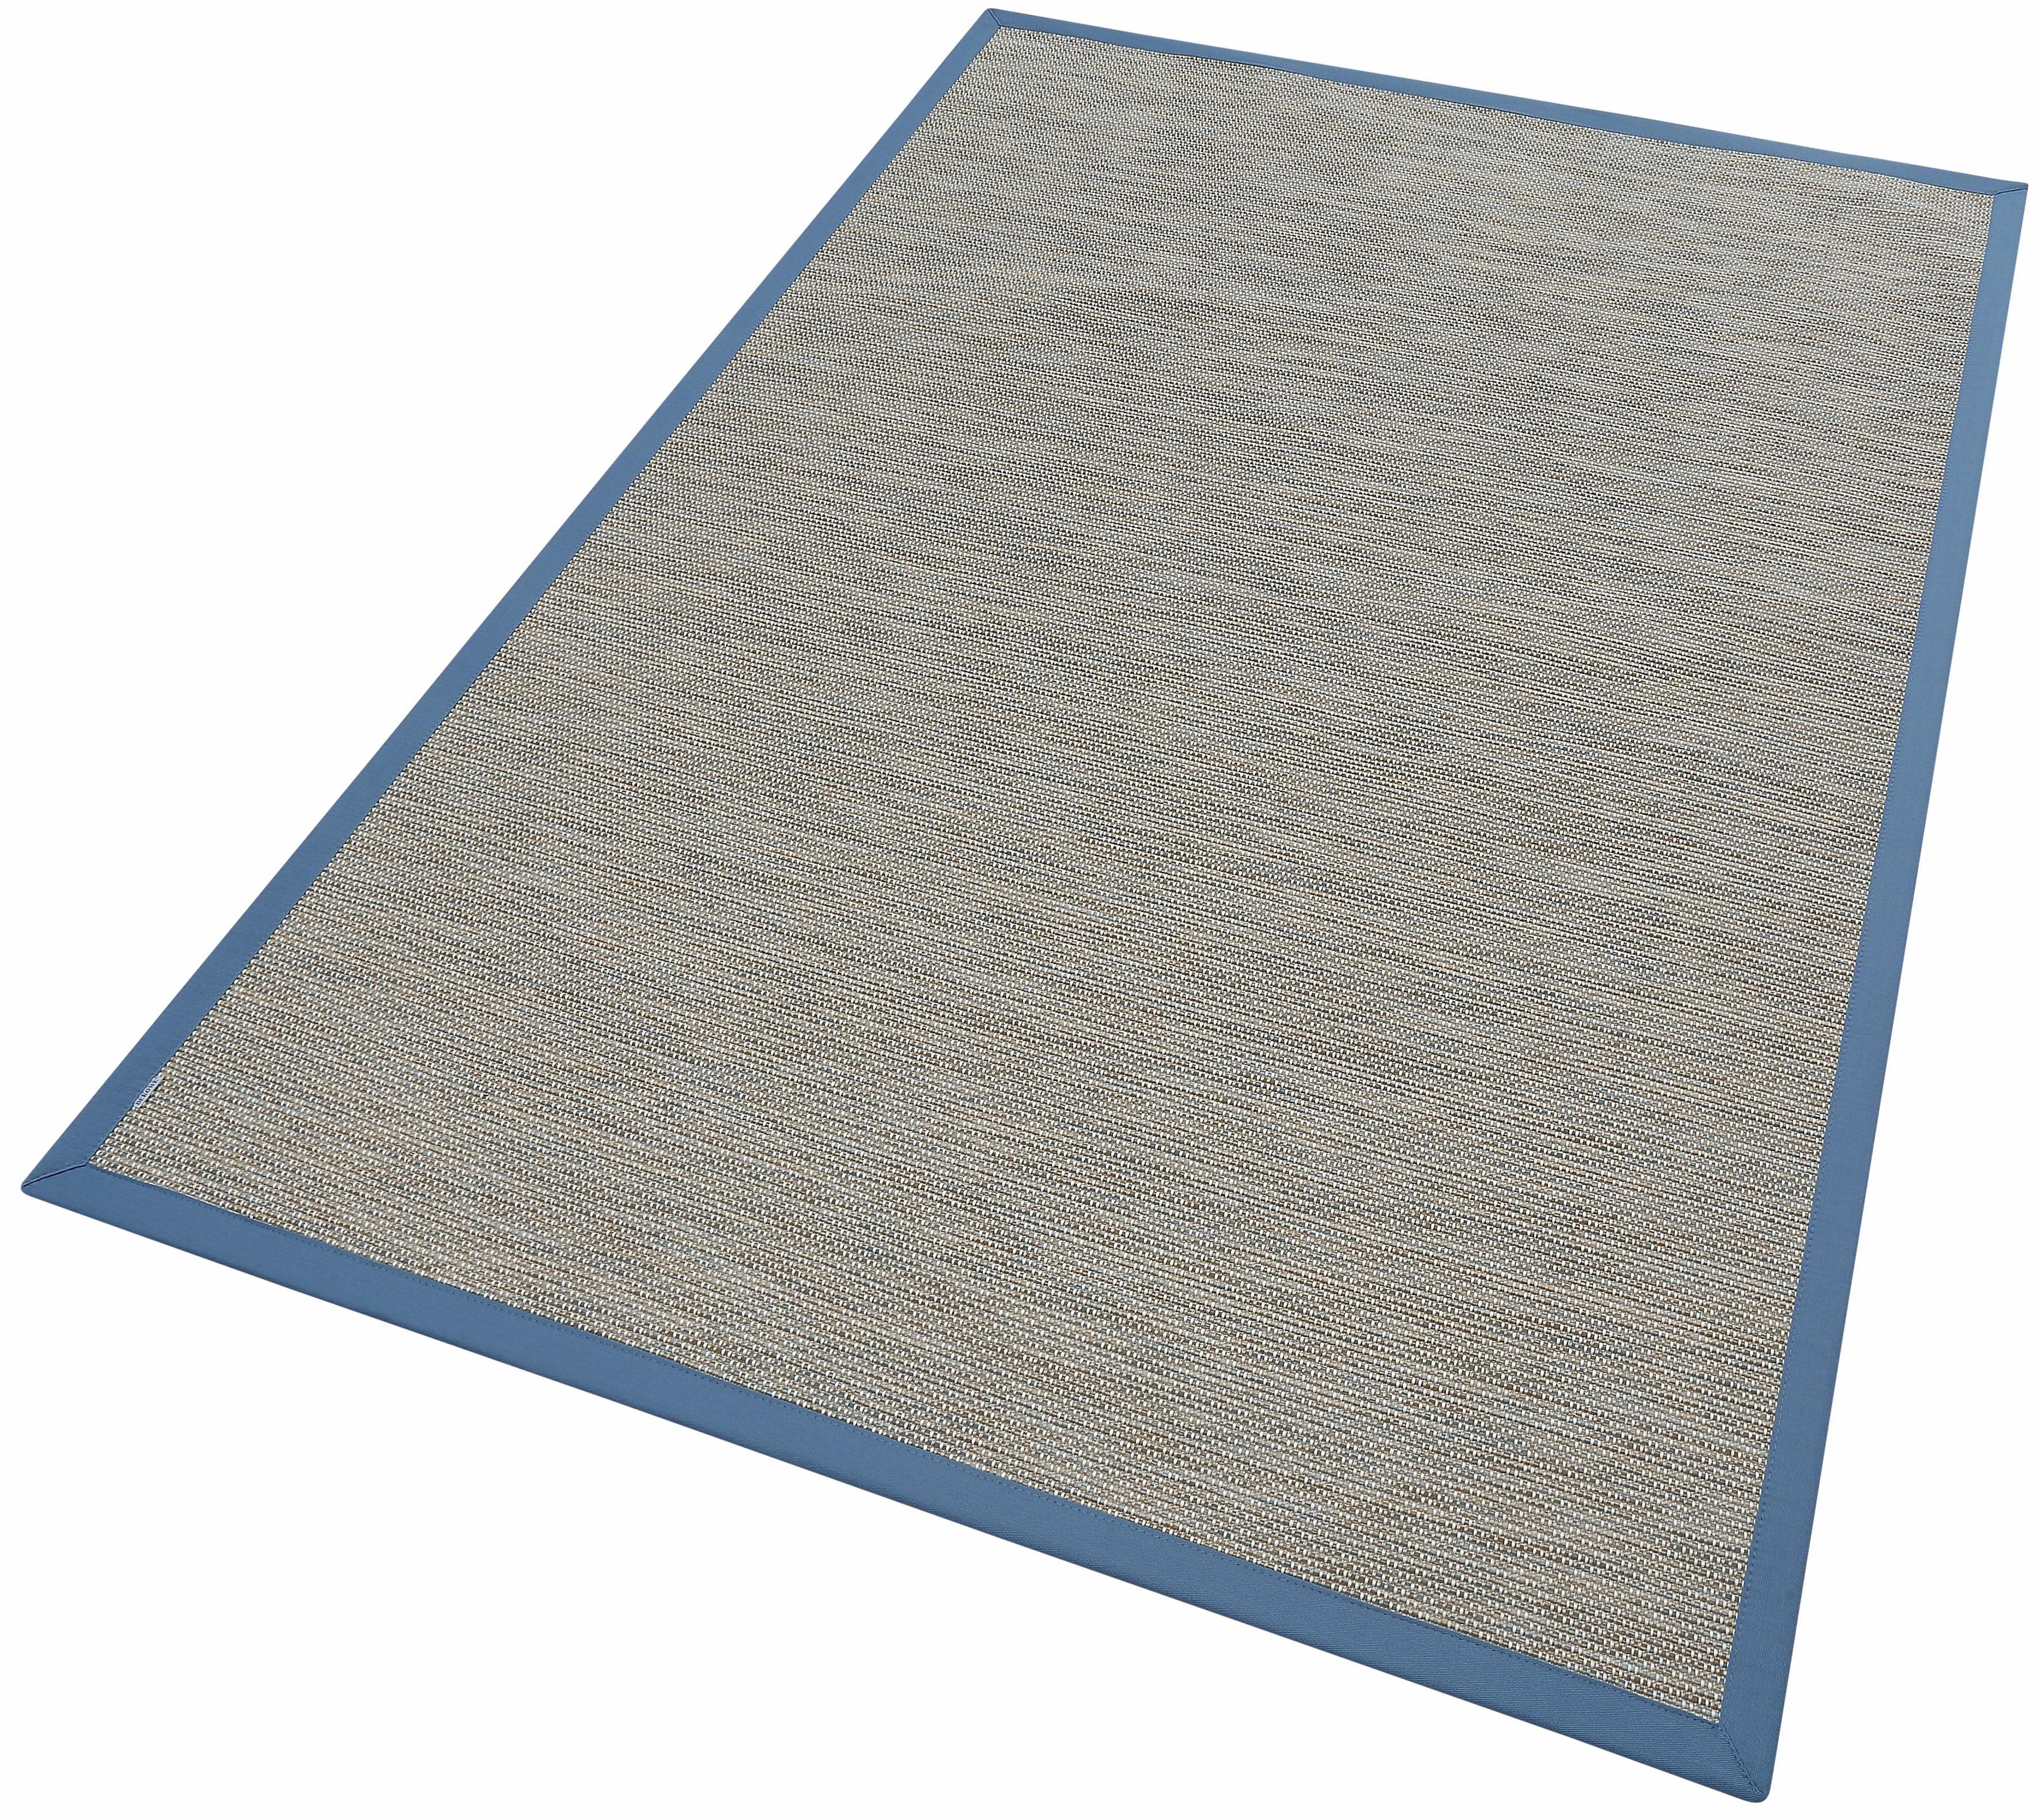 DEKOWE Karpet Color in sisal-look makkelijk gevonden | OTTO